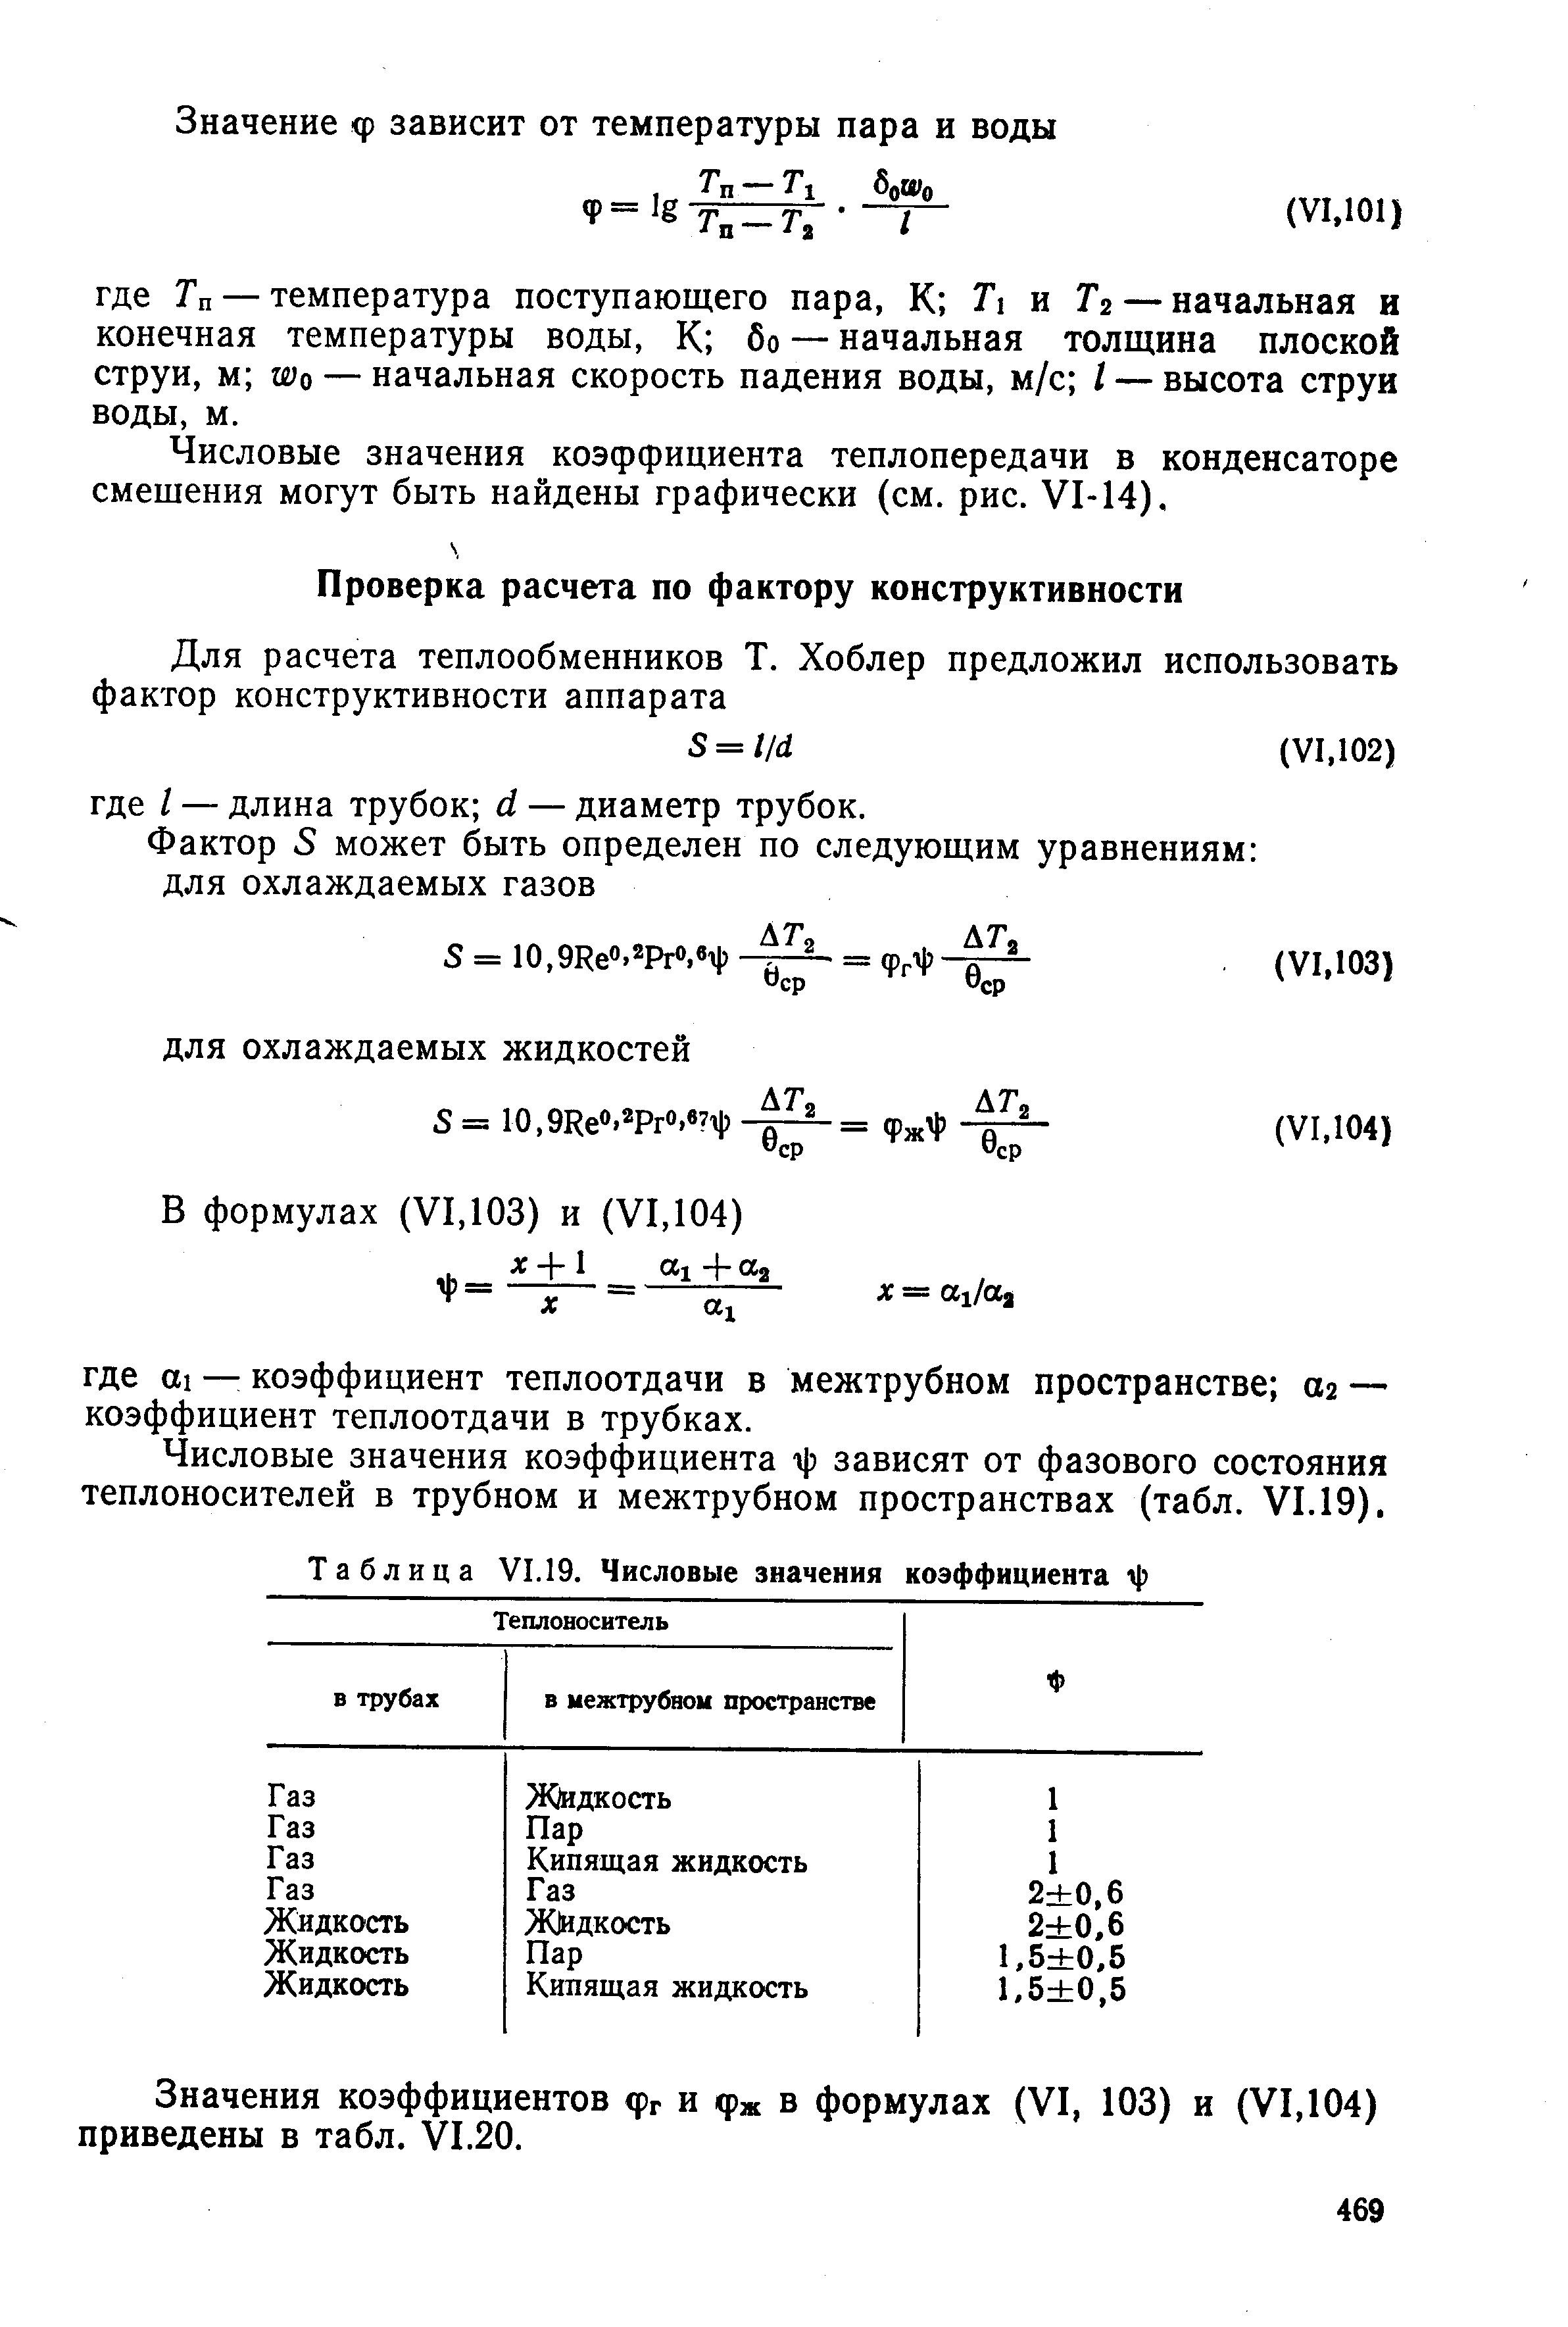 Числовые значения коэффициента -ф зависят от фазового состояния теплоносителей в трубном и межтрубном пространствах (табл. VI.19).